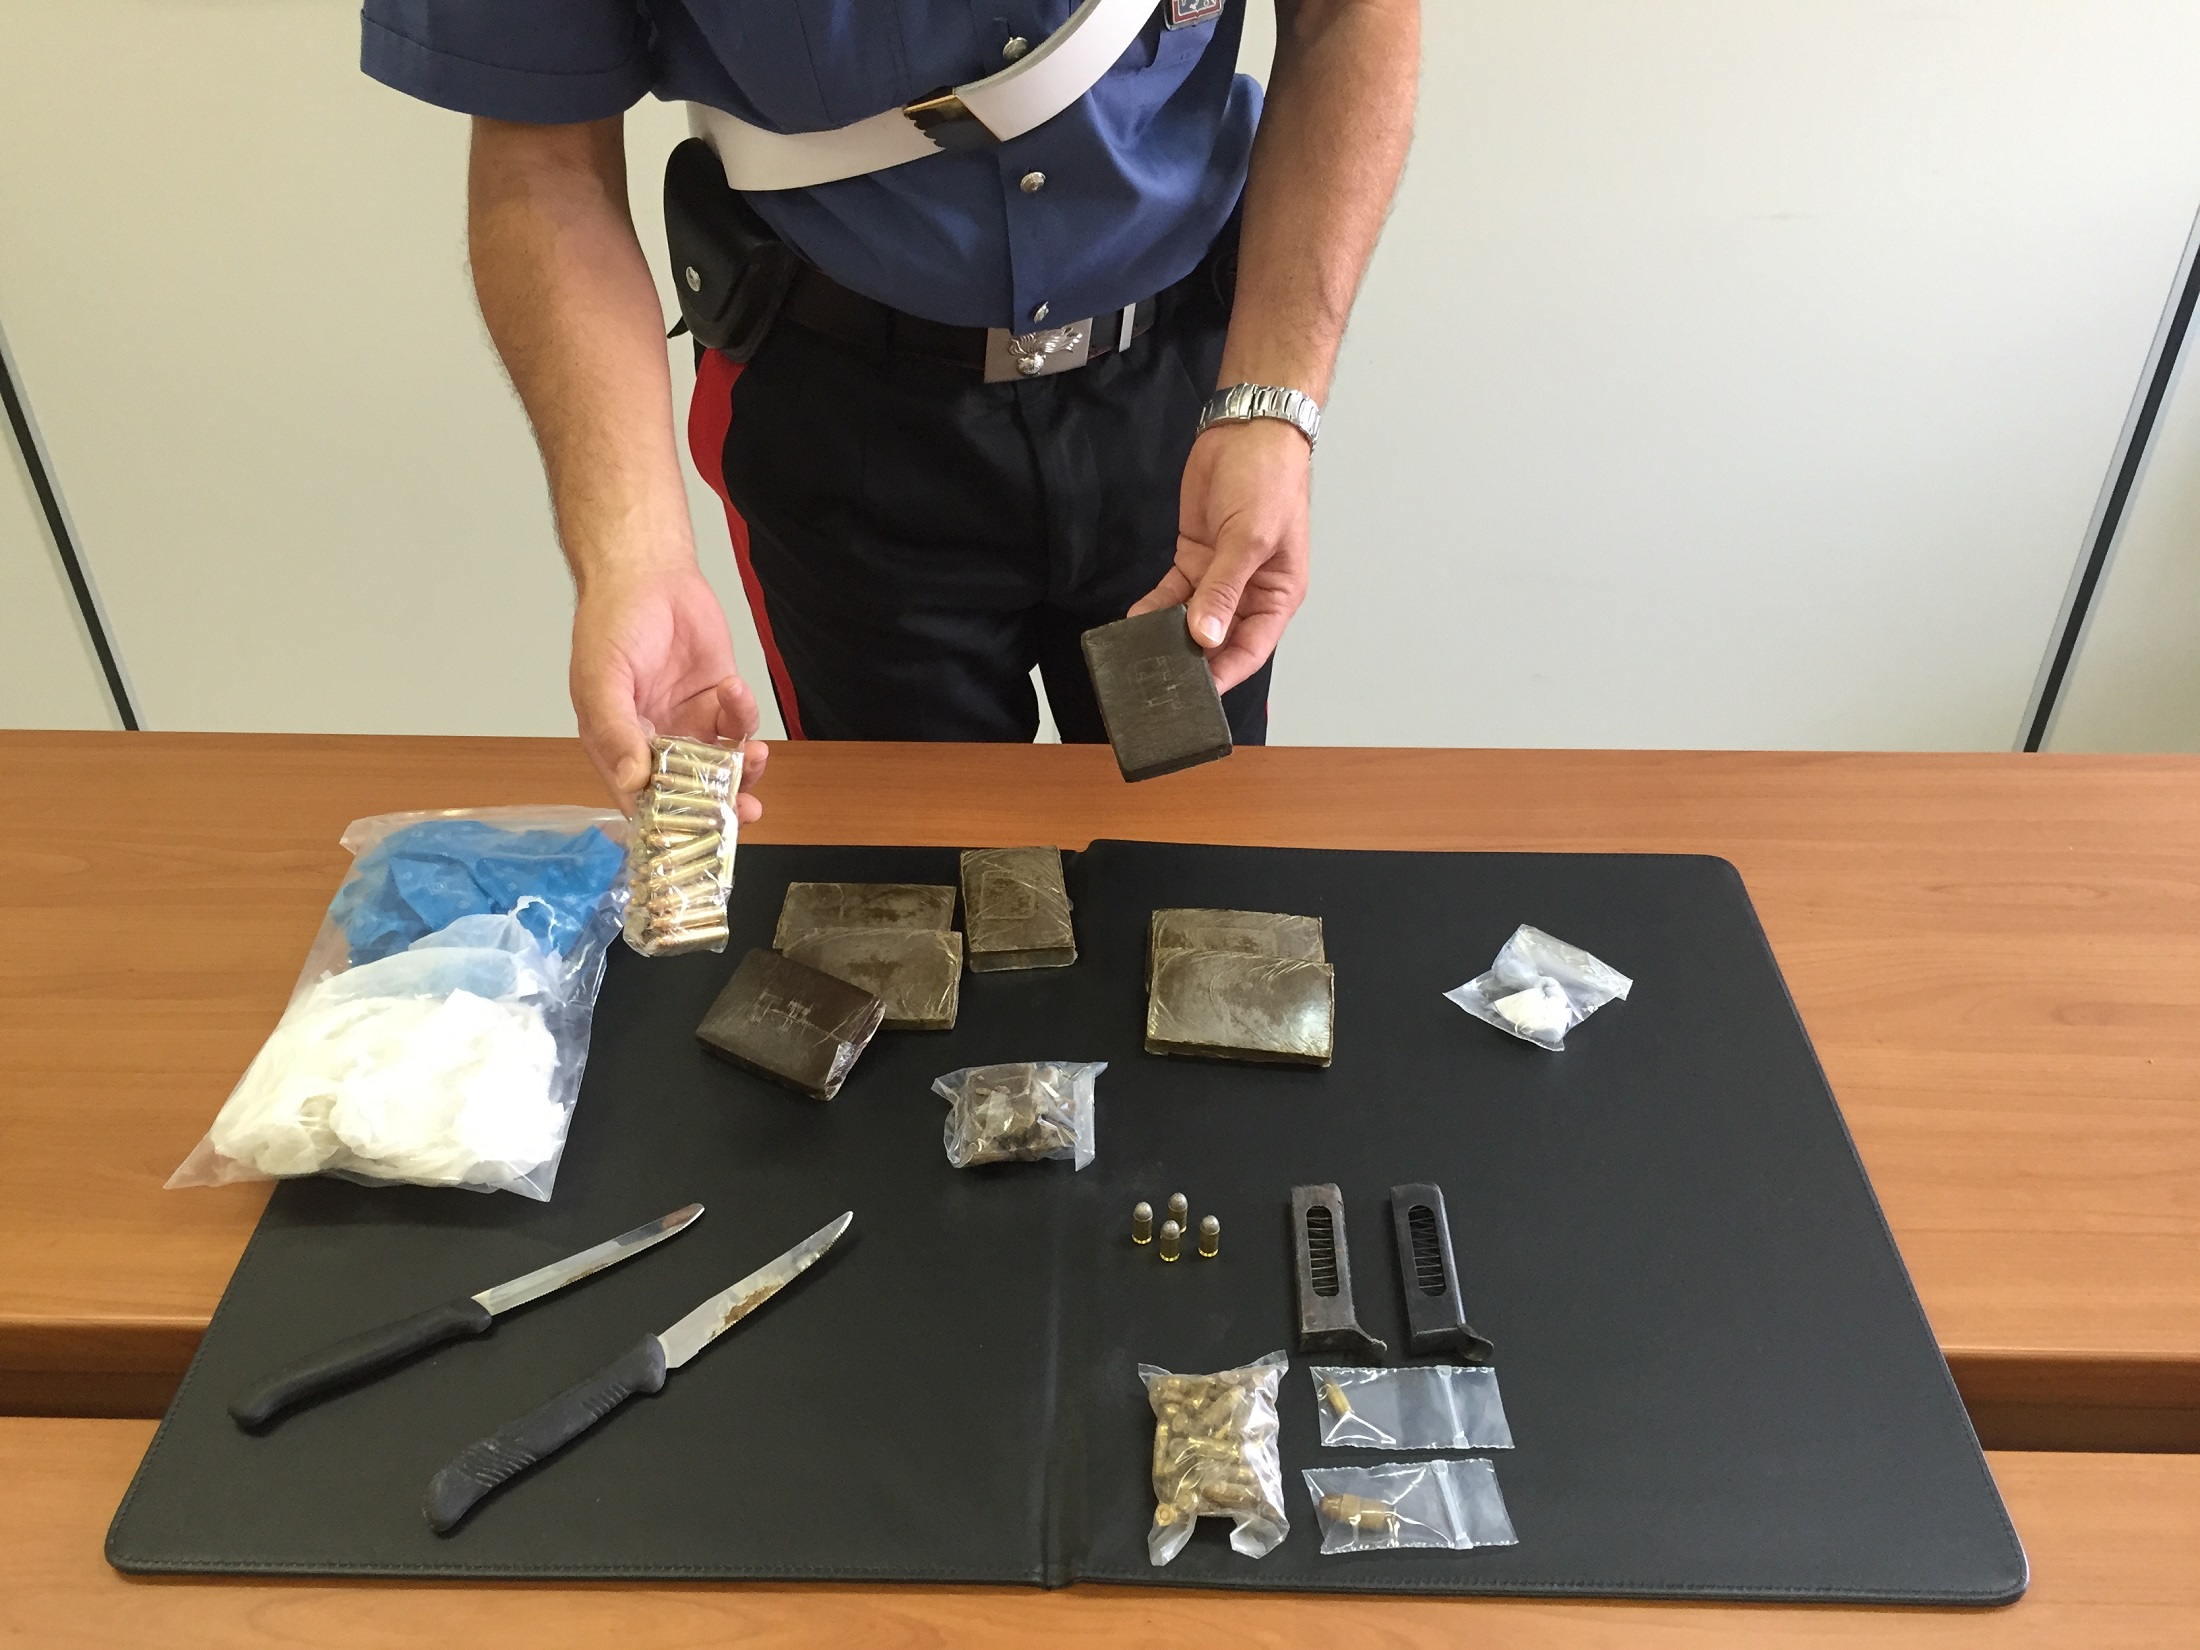  Modica – Blitz antidroga dei Carabinieri, sequestrati hashish e cocaina: arrestati due uomini